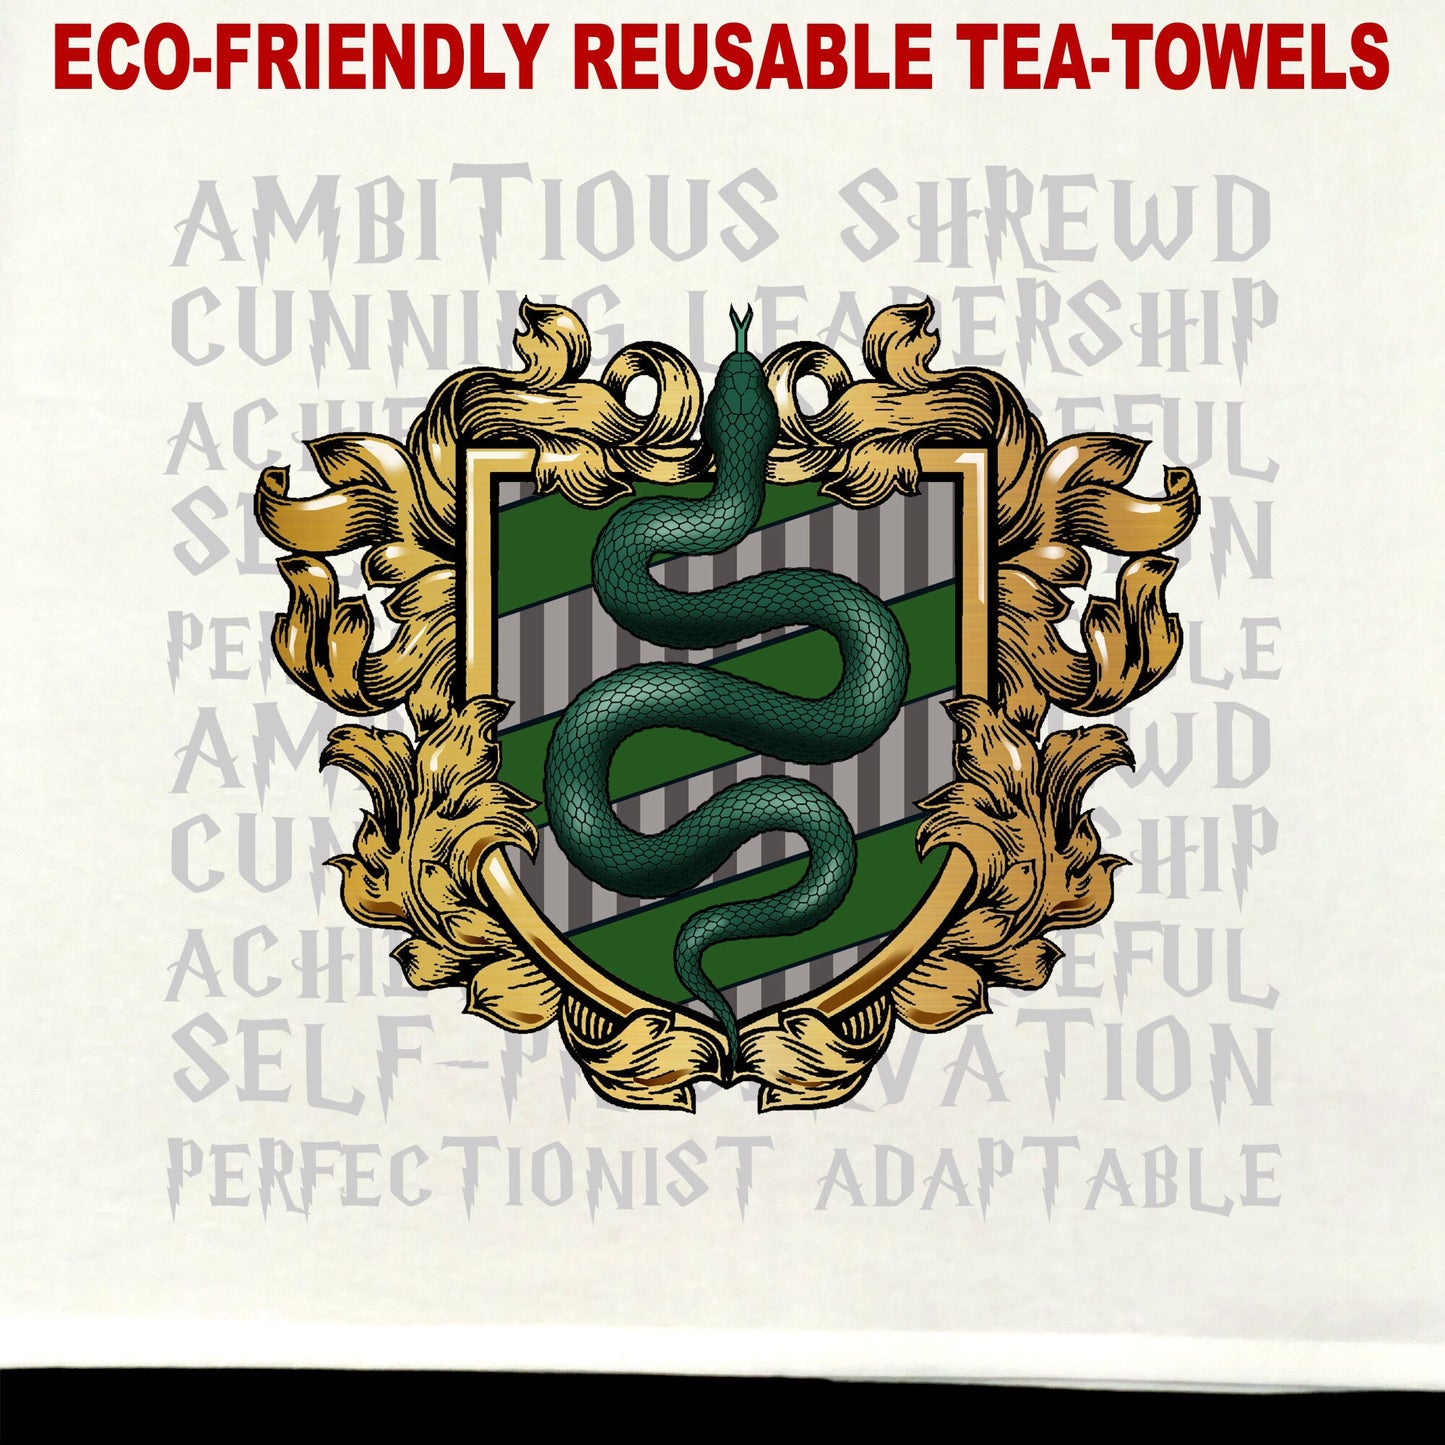 Serpent House Tea Towel / tea towel / dish towel / hand towel / reusable wipe / kitchen gift / kitchen deco